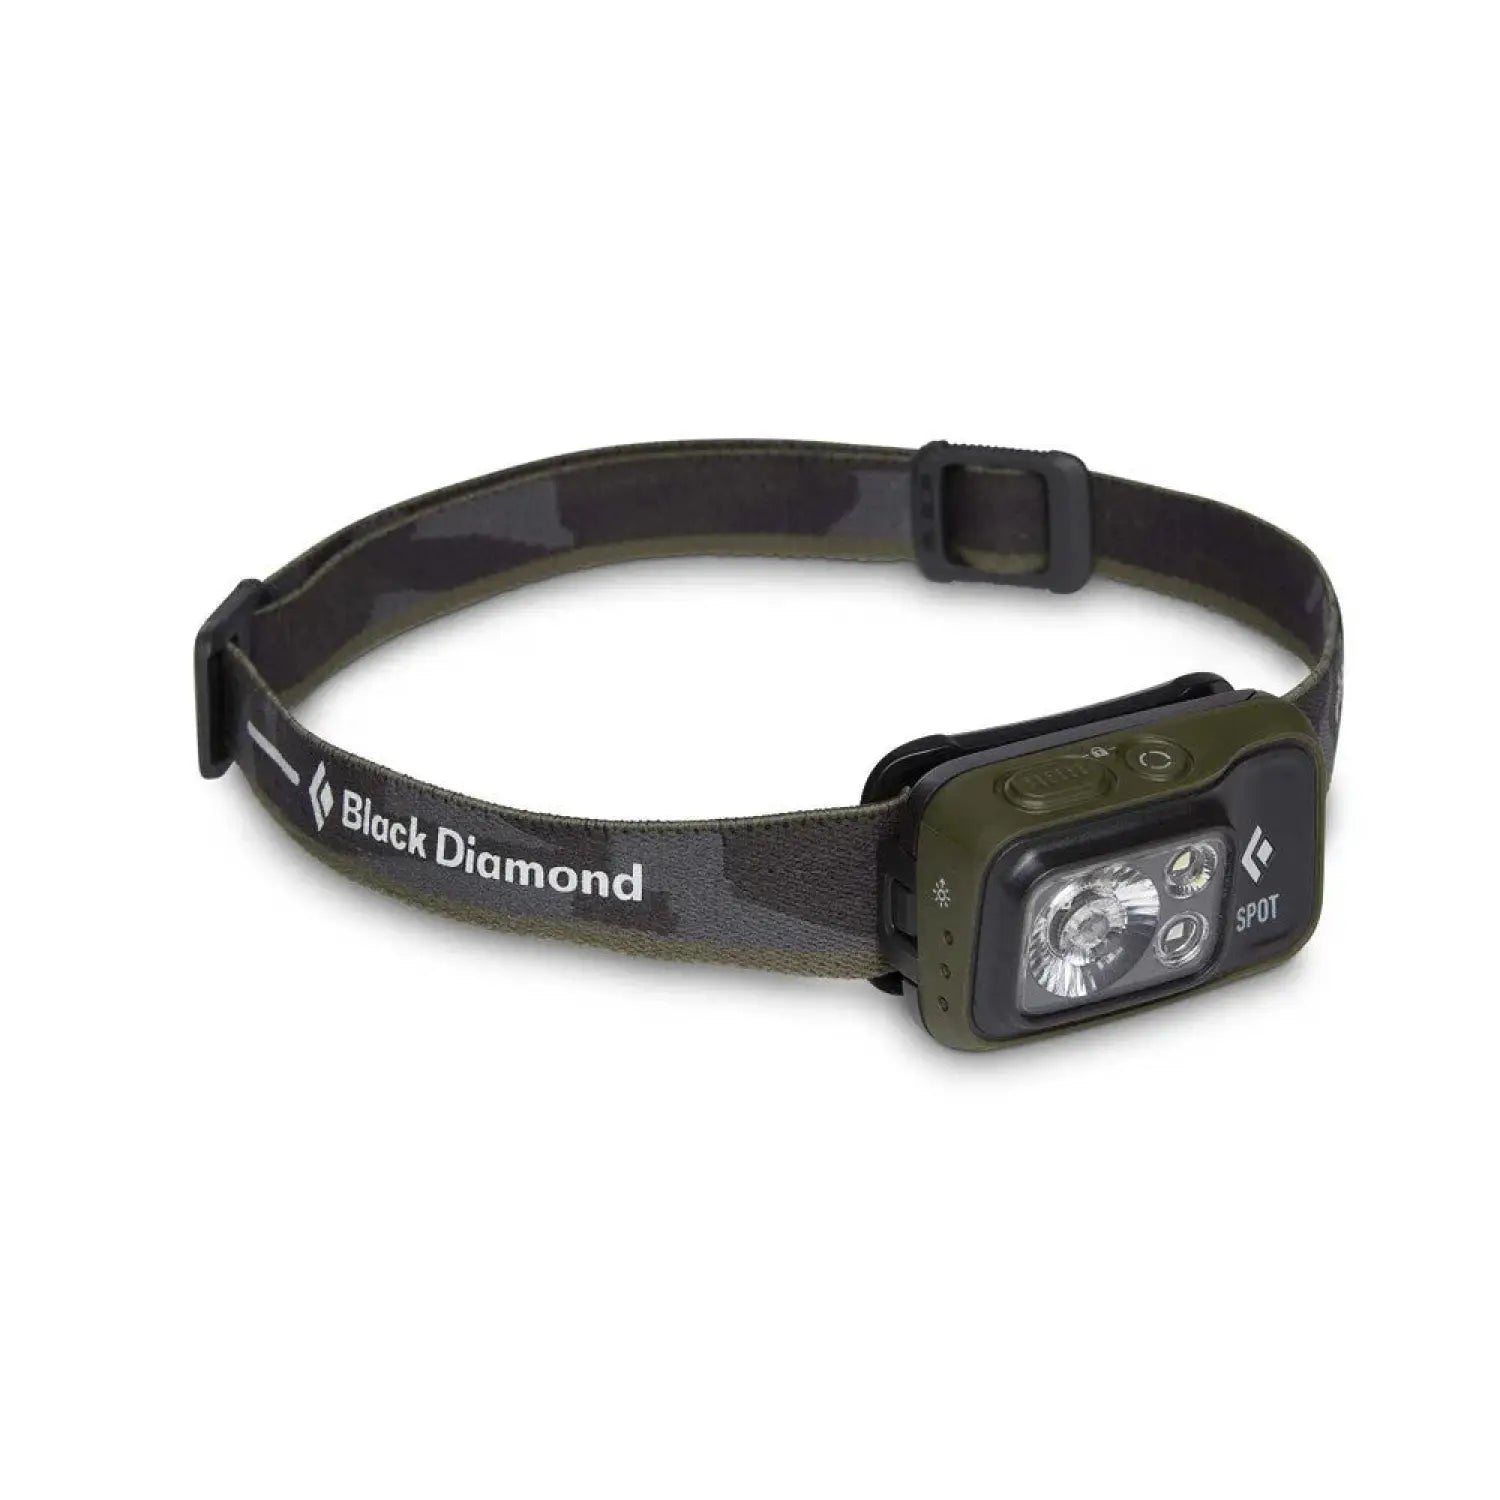 Black Diamond Spot 400 Headlamp shown in the Dark Olive color option.